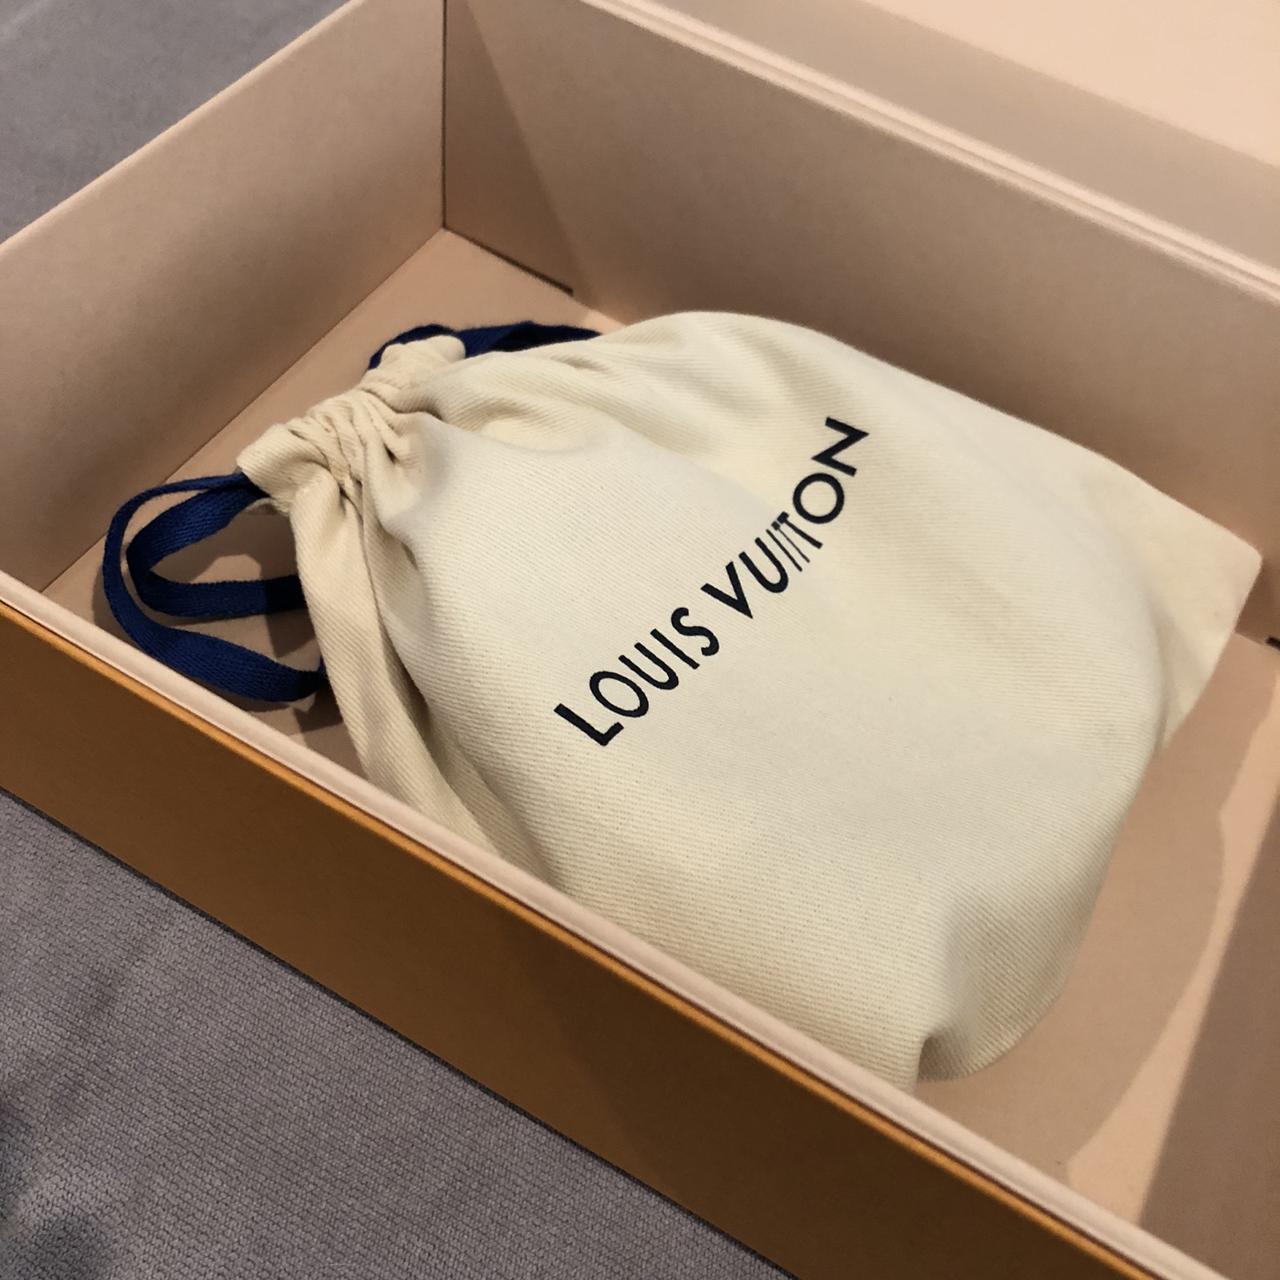 Louis Vuitton Mens Belt, size: 95mm or pant size 38. - Depop